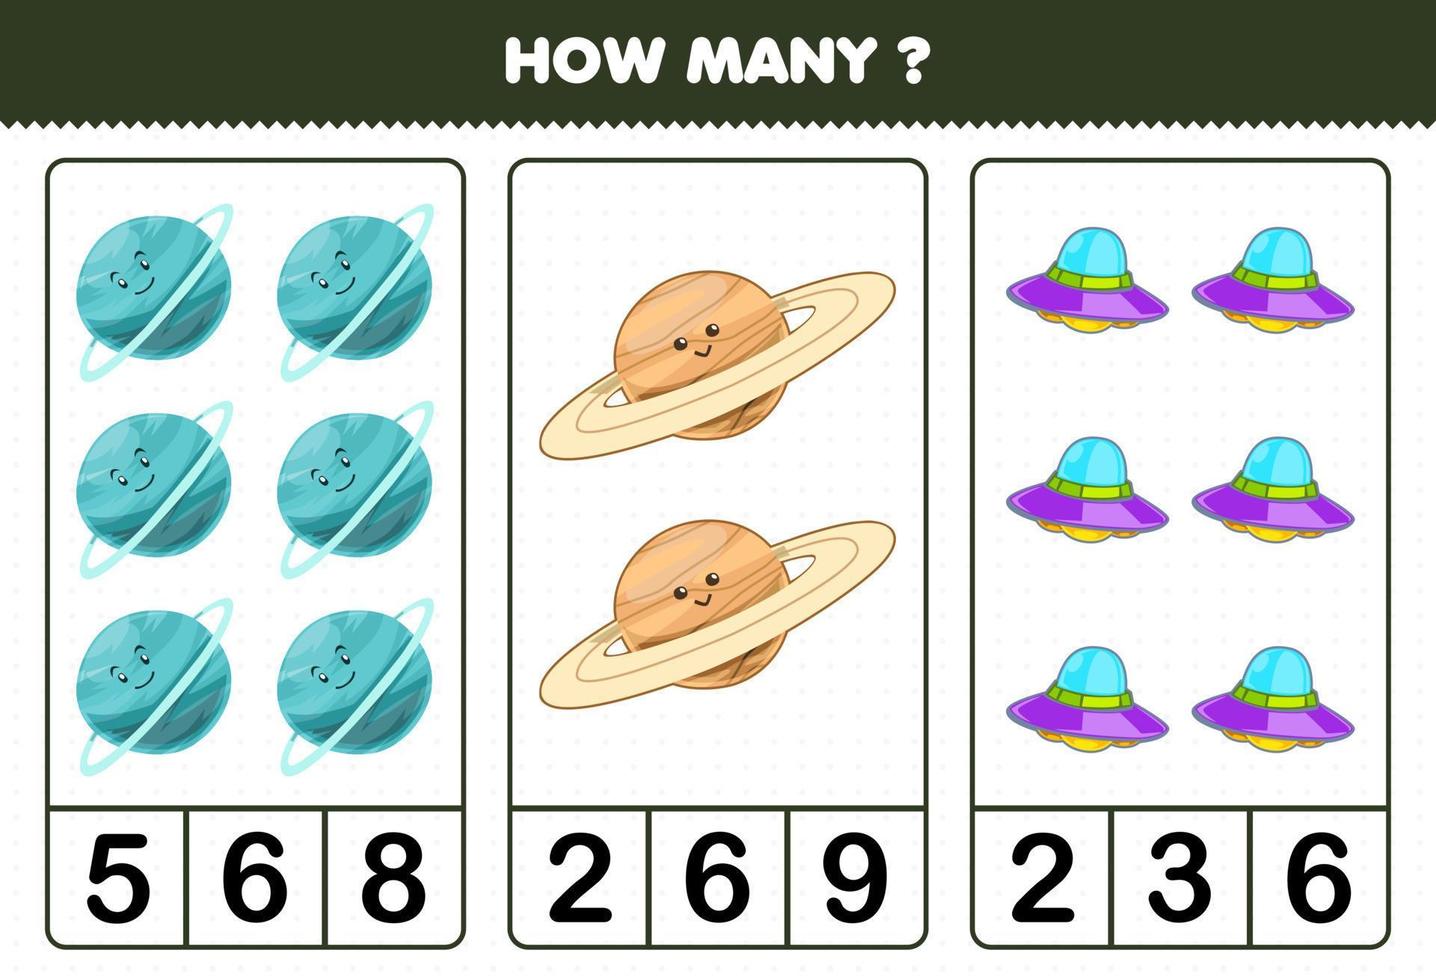 gioco educativo per bambini che conta quanti simpatici cartoni animati sistema solare urano saturno pianeta ufo vettore